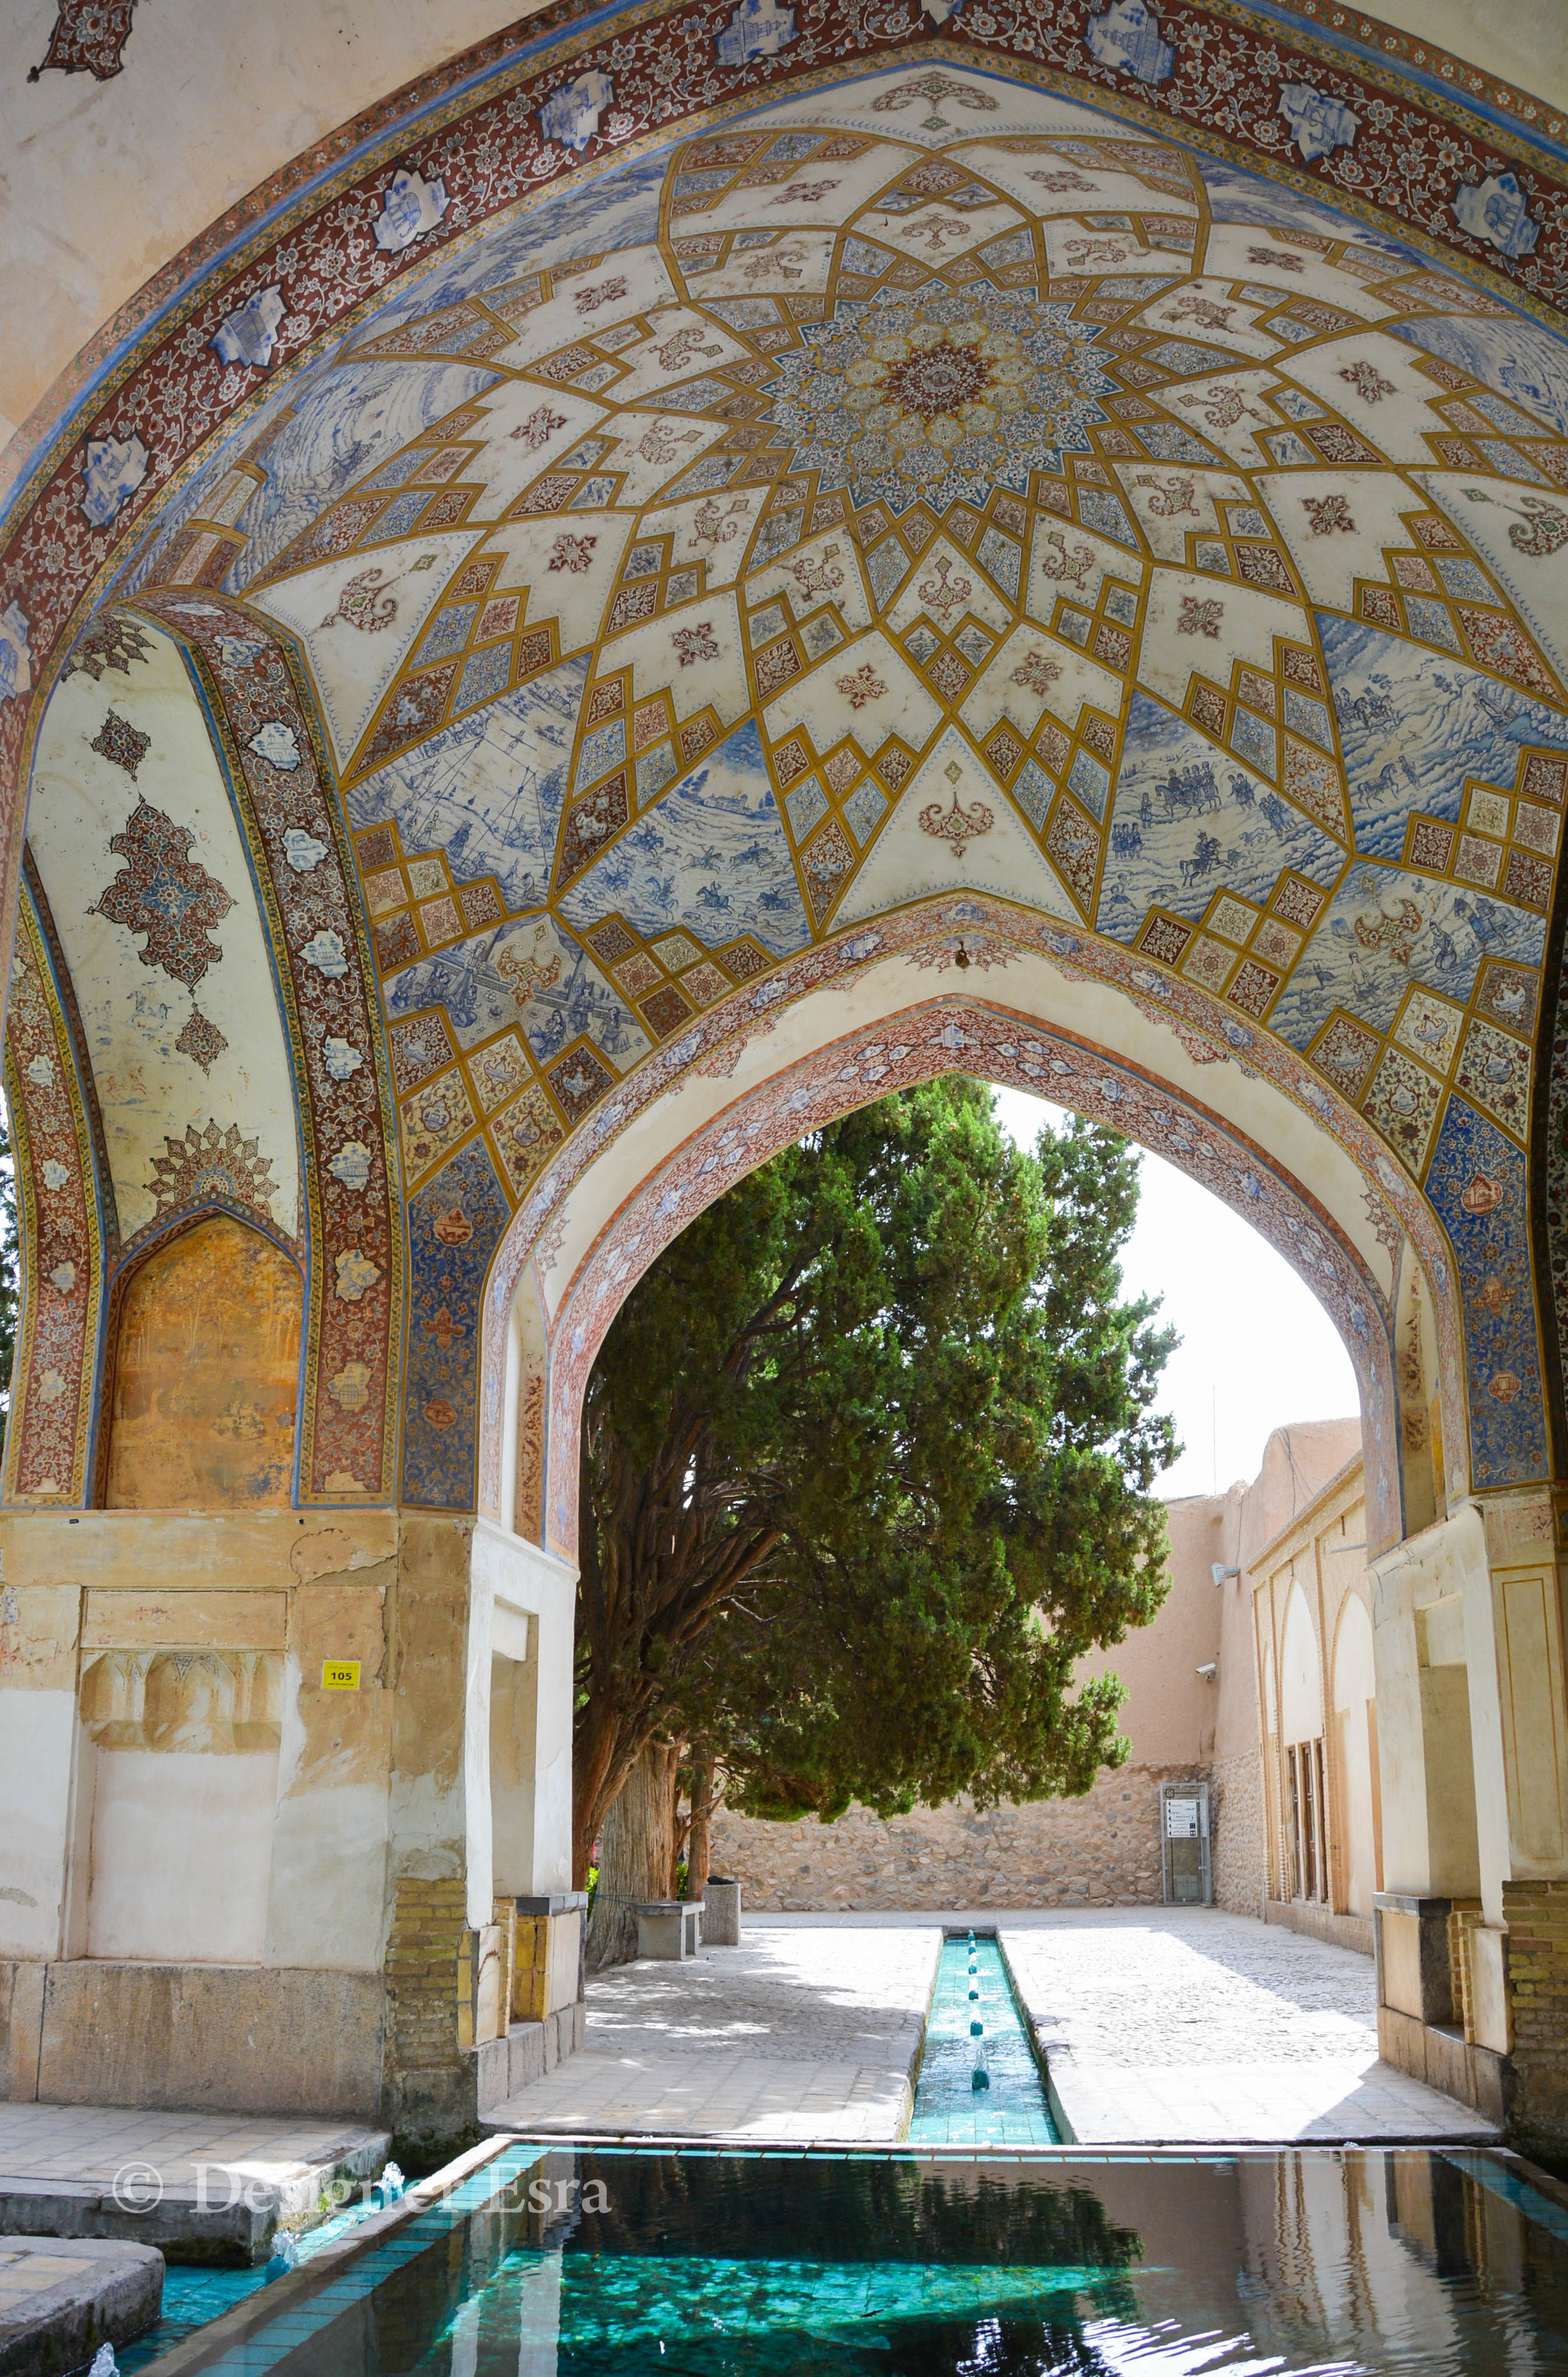 Islamic Geometry in the Fin Garden in Iran 